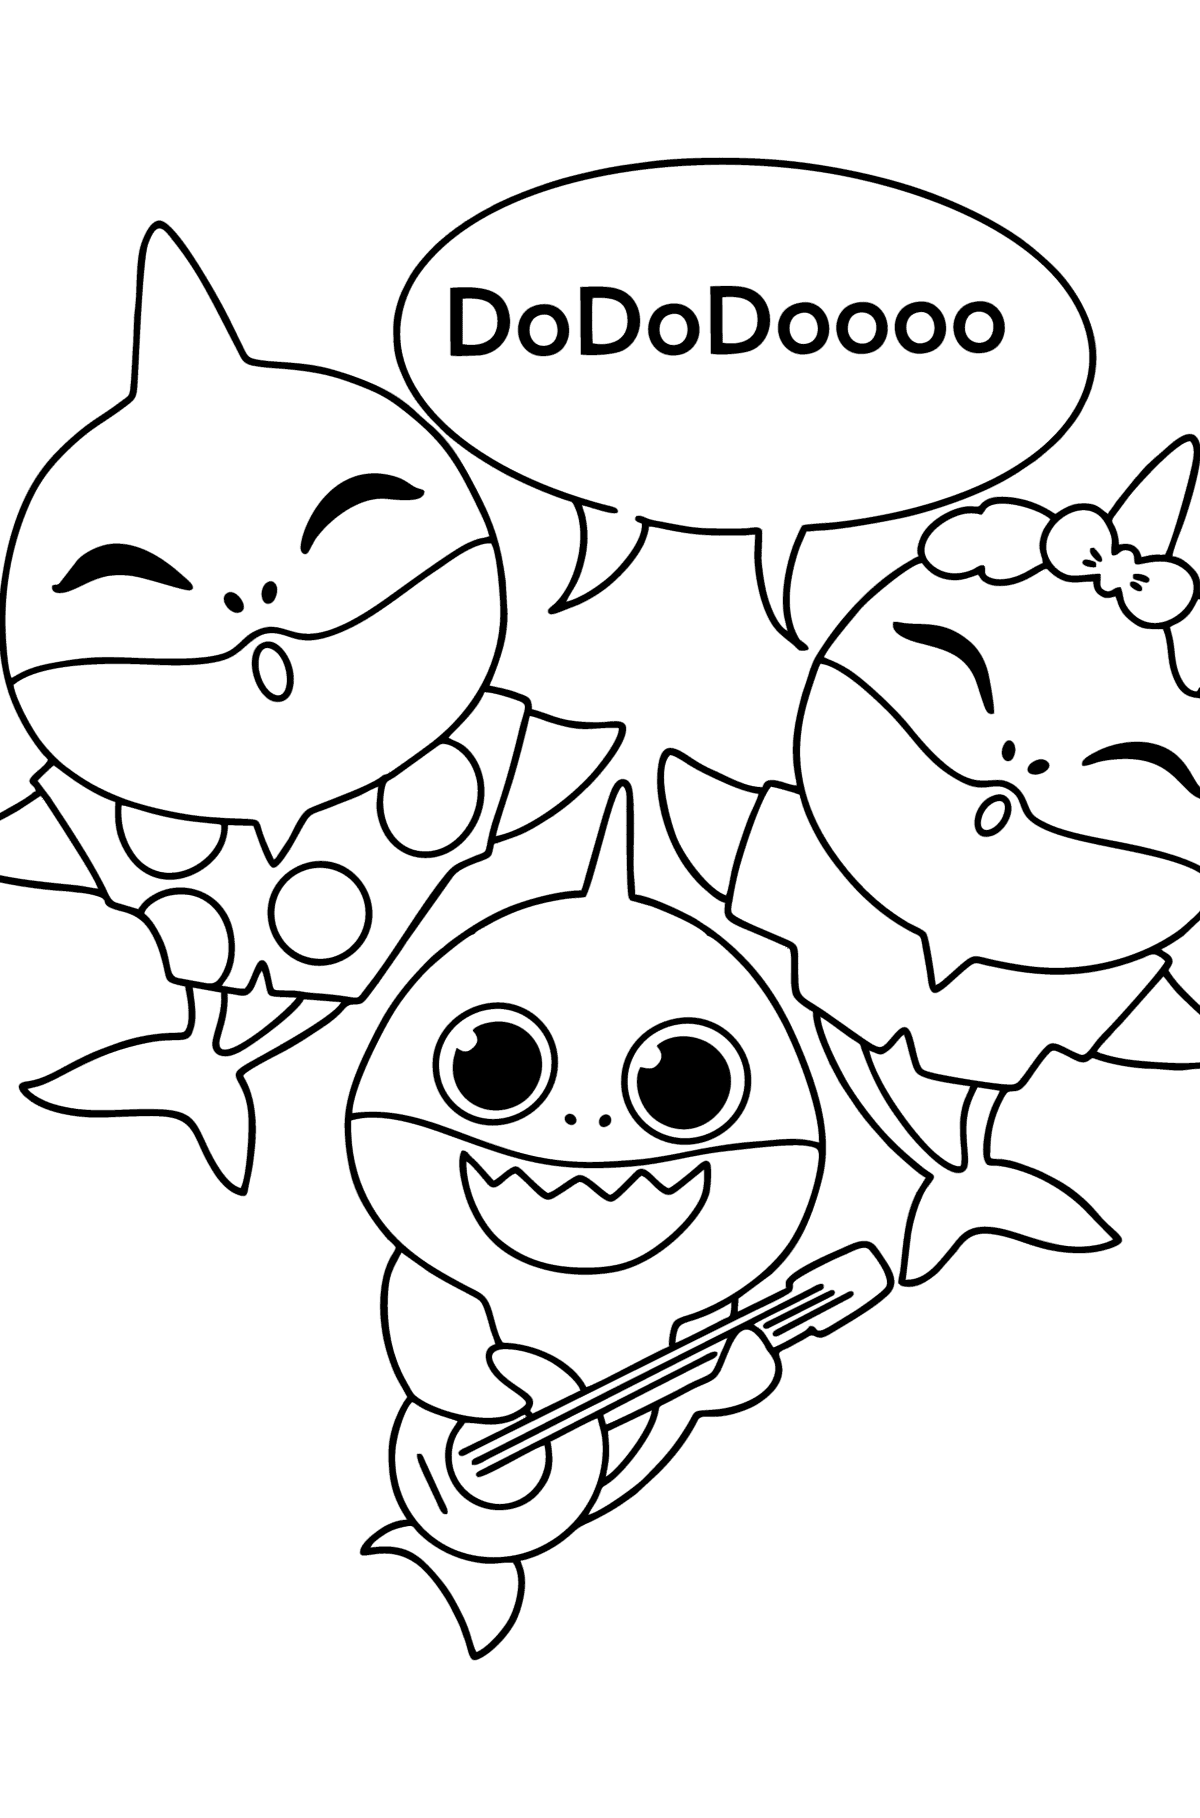 Розмальовка Doo doo doo Baby shark - Розмальовки для дітей